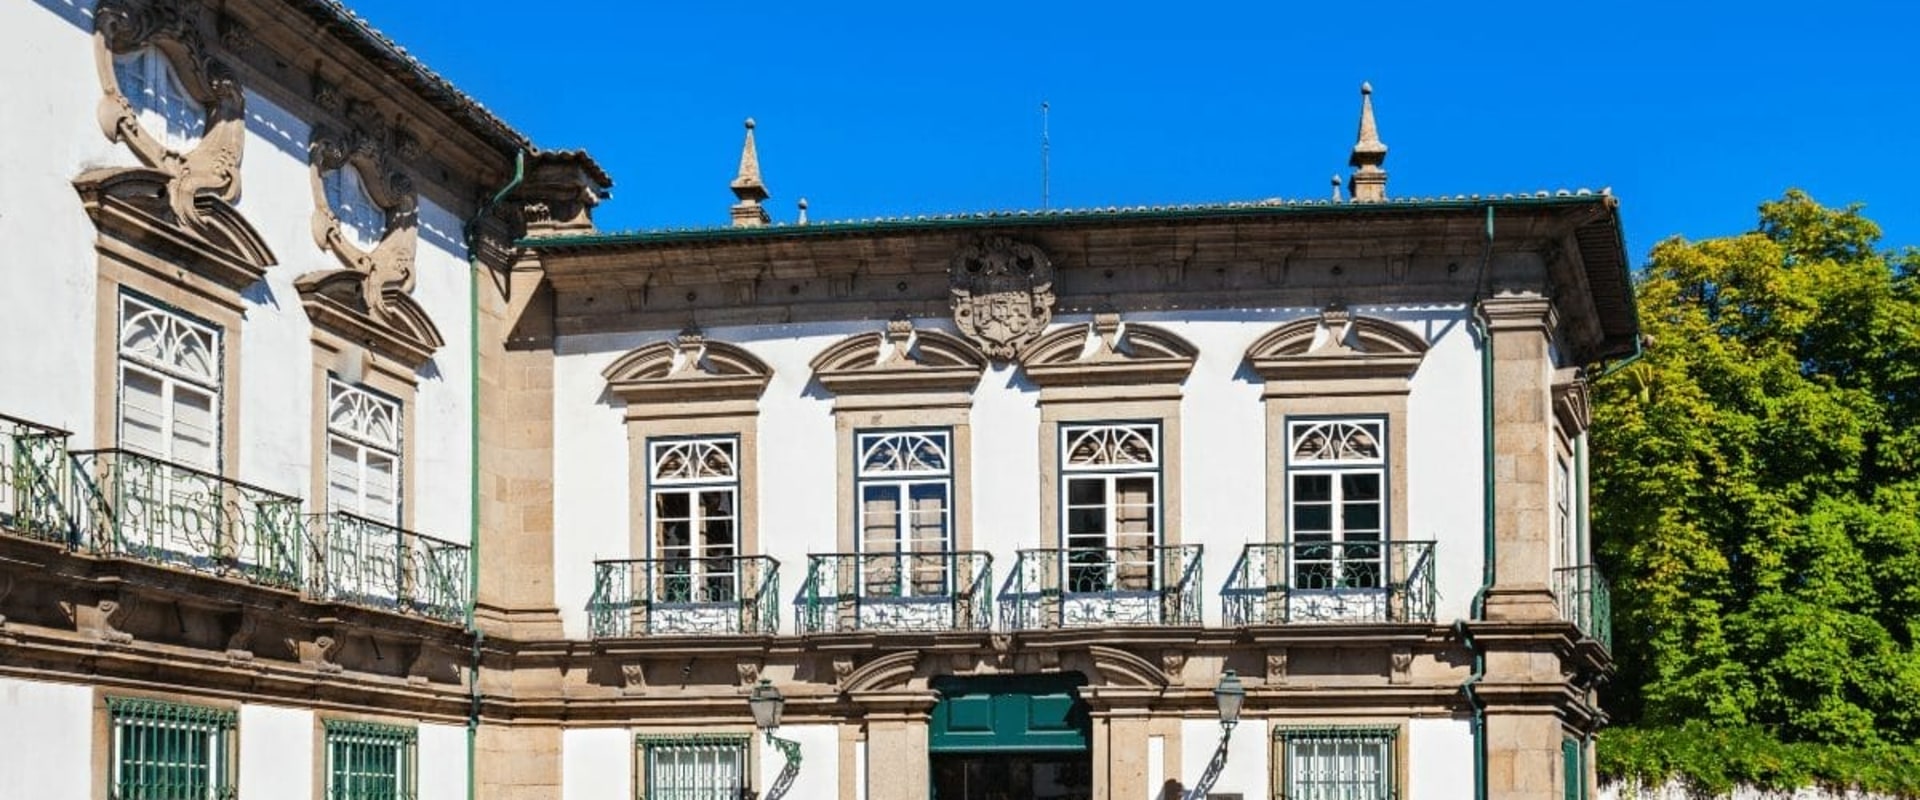 O impacto da religião na identidade cultural de Braga, Portugal